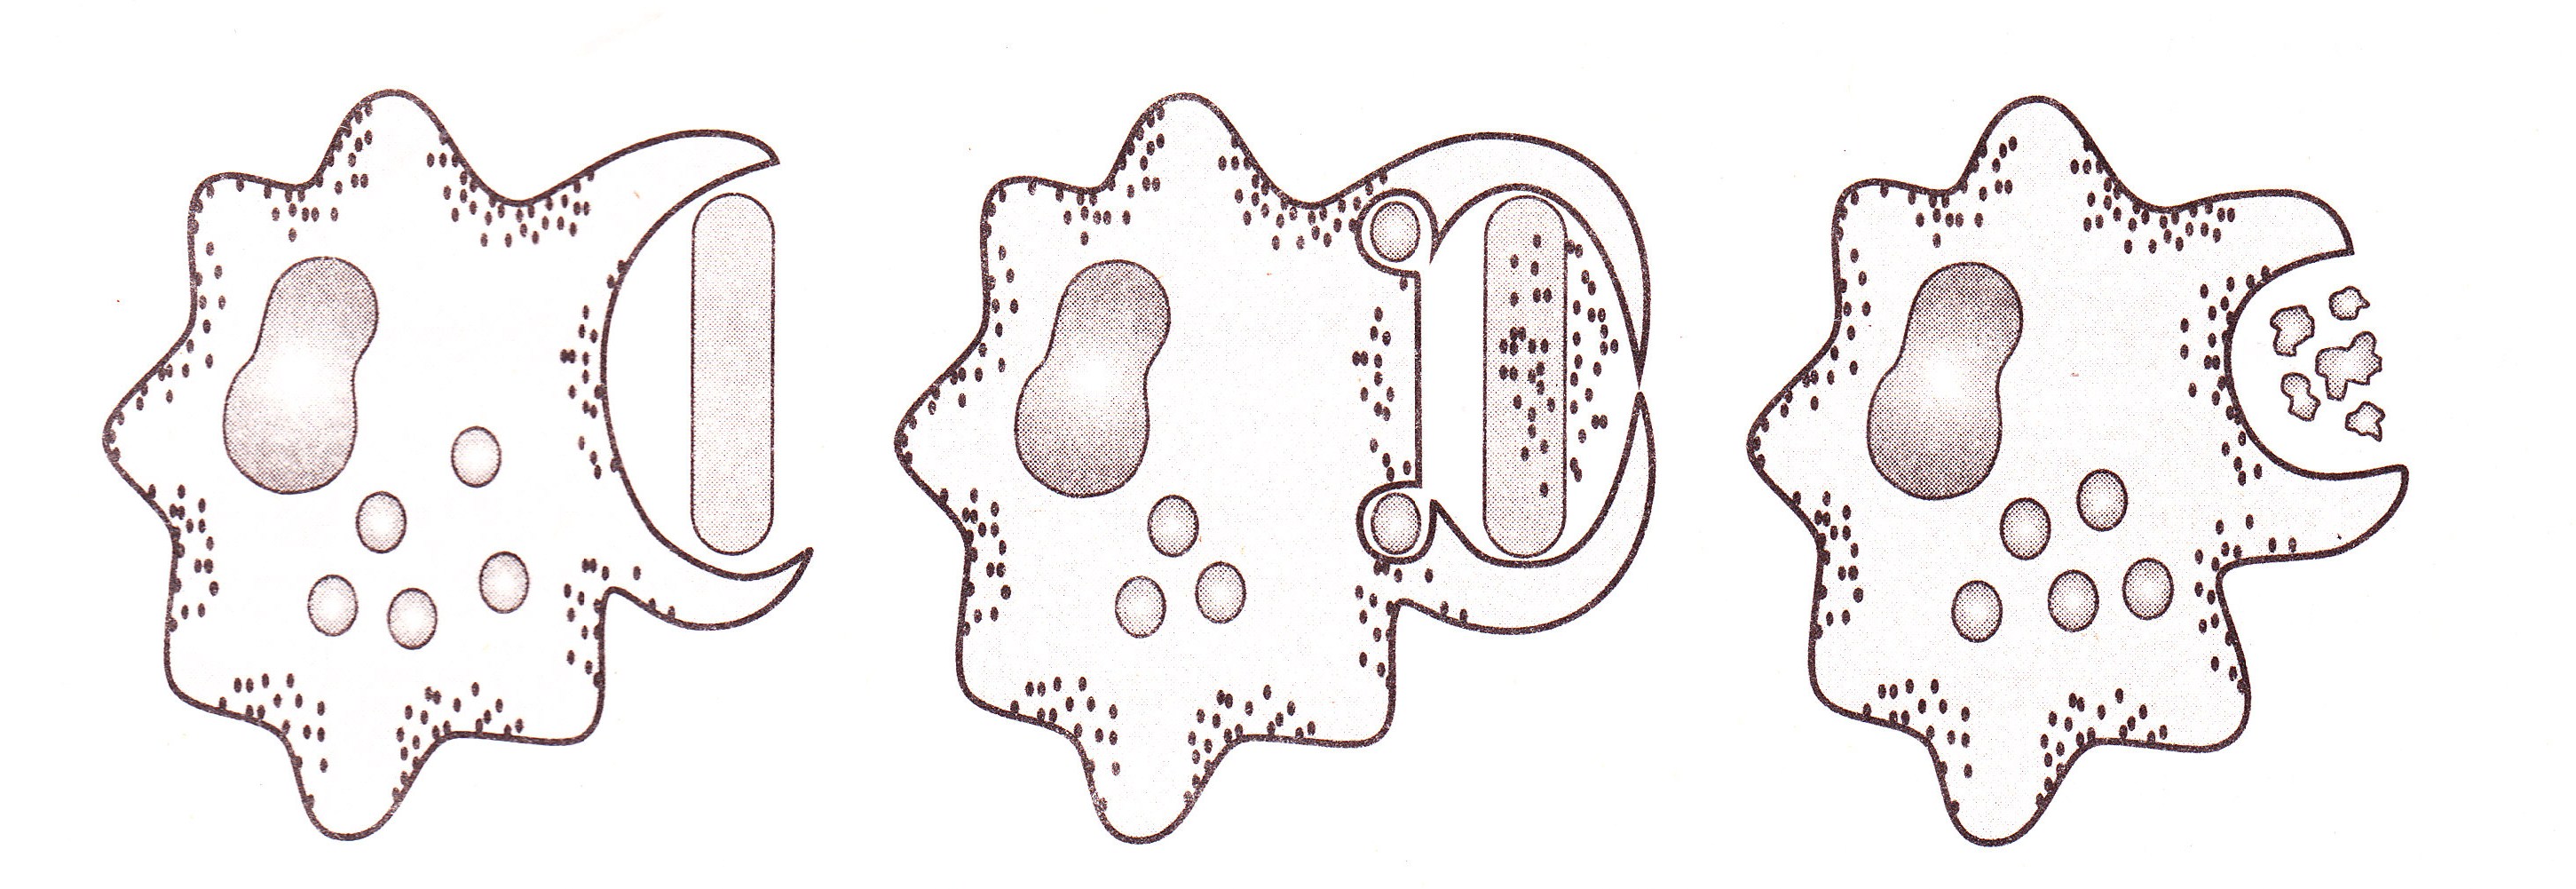 Клеточный фагоцитоз рисунок